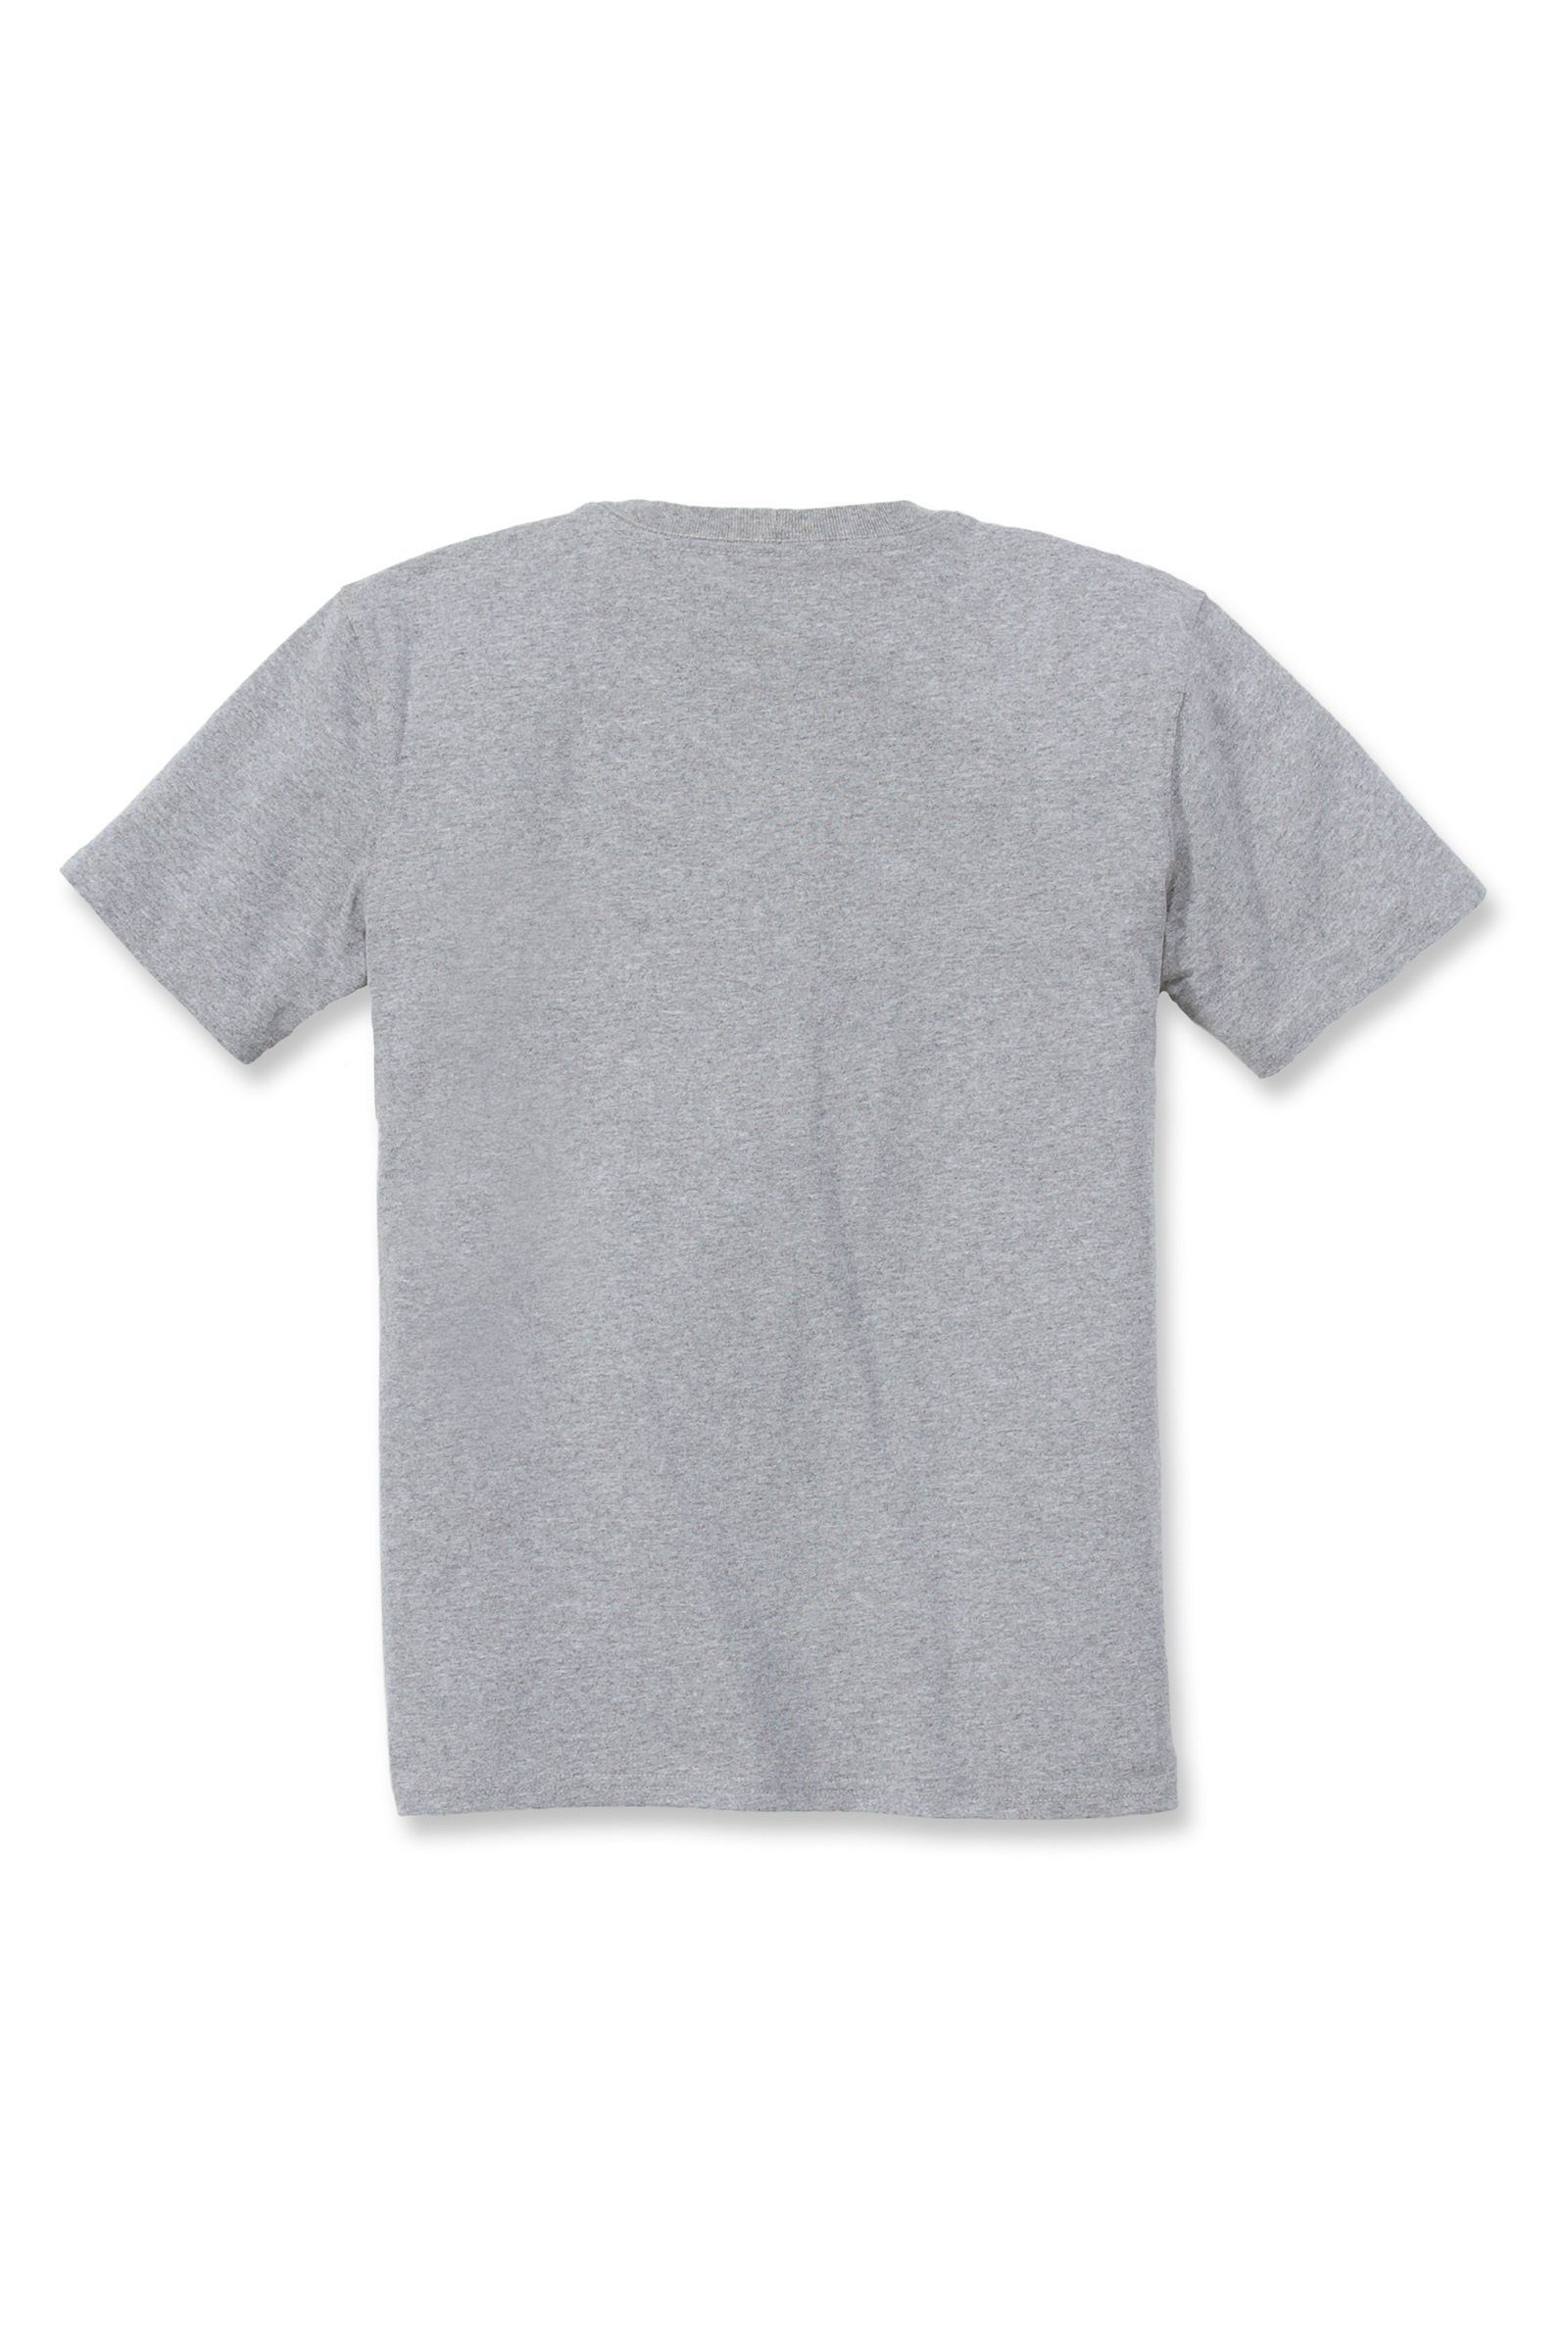 heather Fit T-Shirt grey Heavyweight Adult Loose Damen Carhartt Short-Sleeve Carhartt T-Shirt Pocket